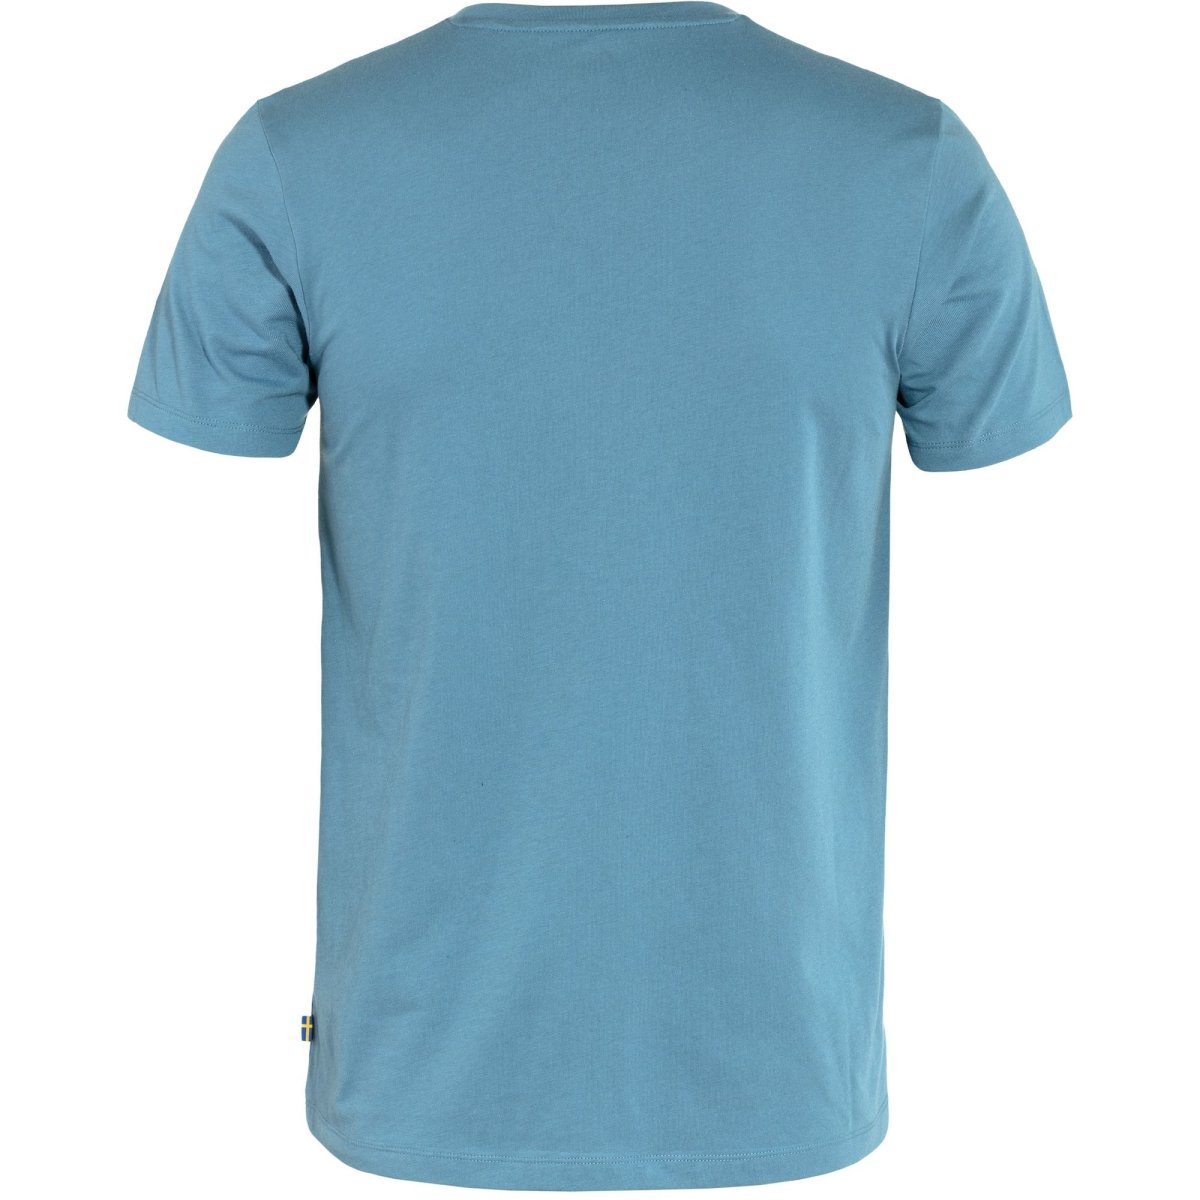 Fj&auml;llr&auml;ven Fox T-Shirt 87052 dawn blue Herren Jersey Brand Shirt